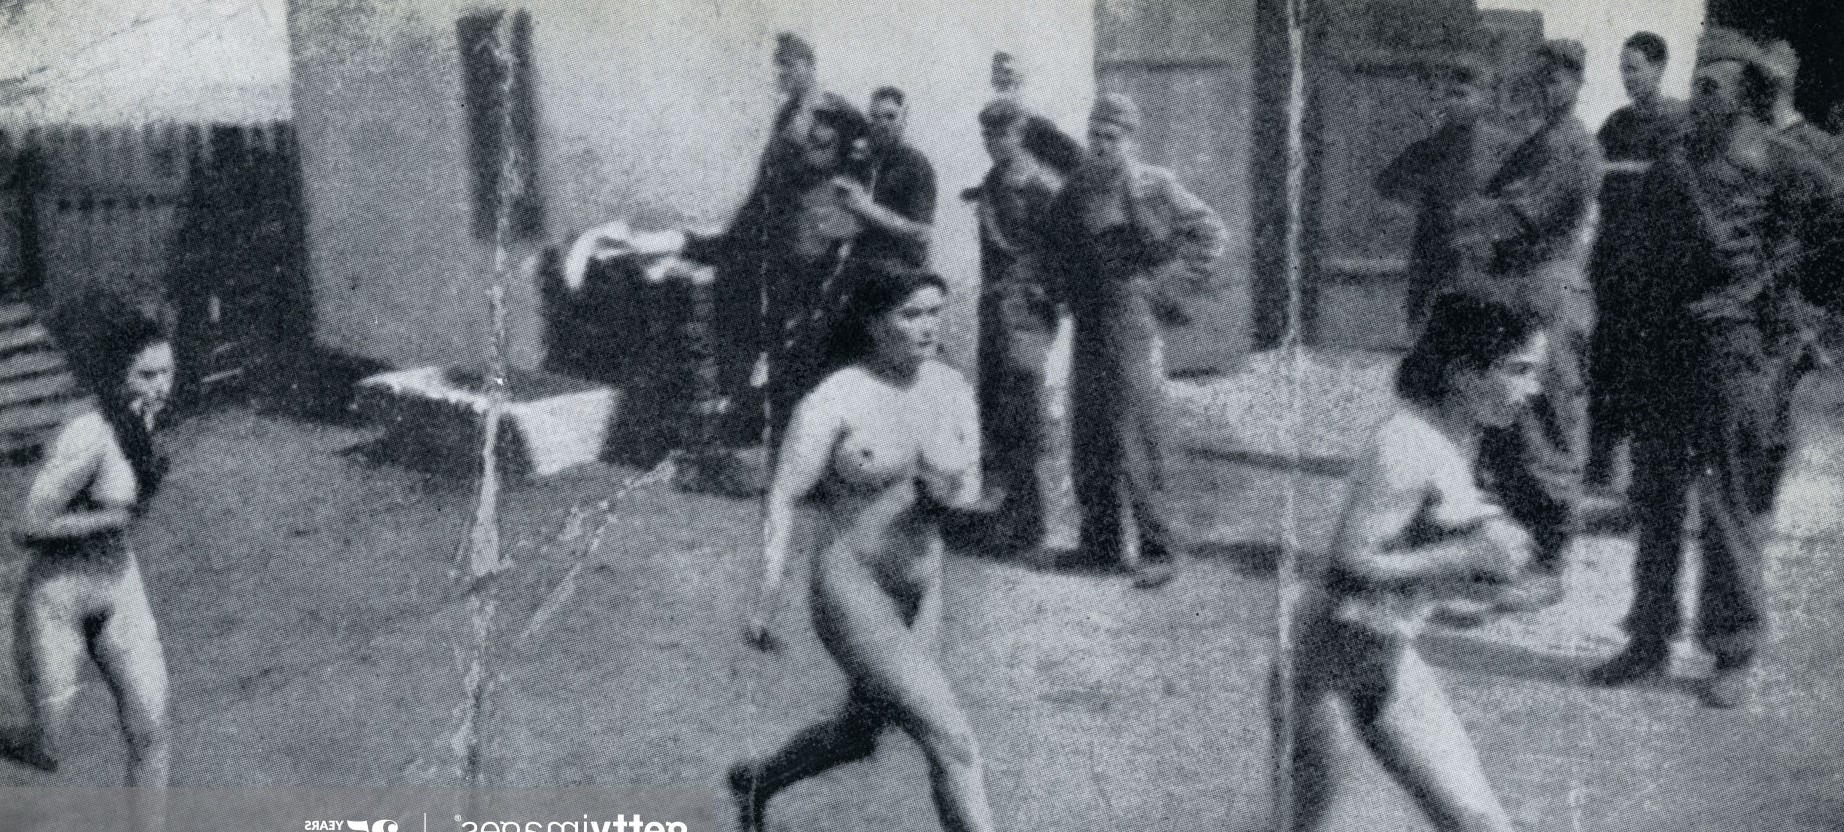 Naked women humiliated image photo